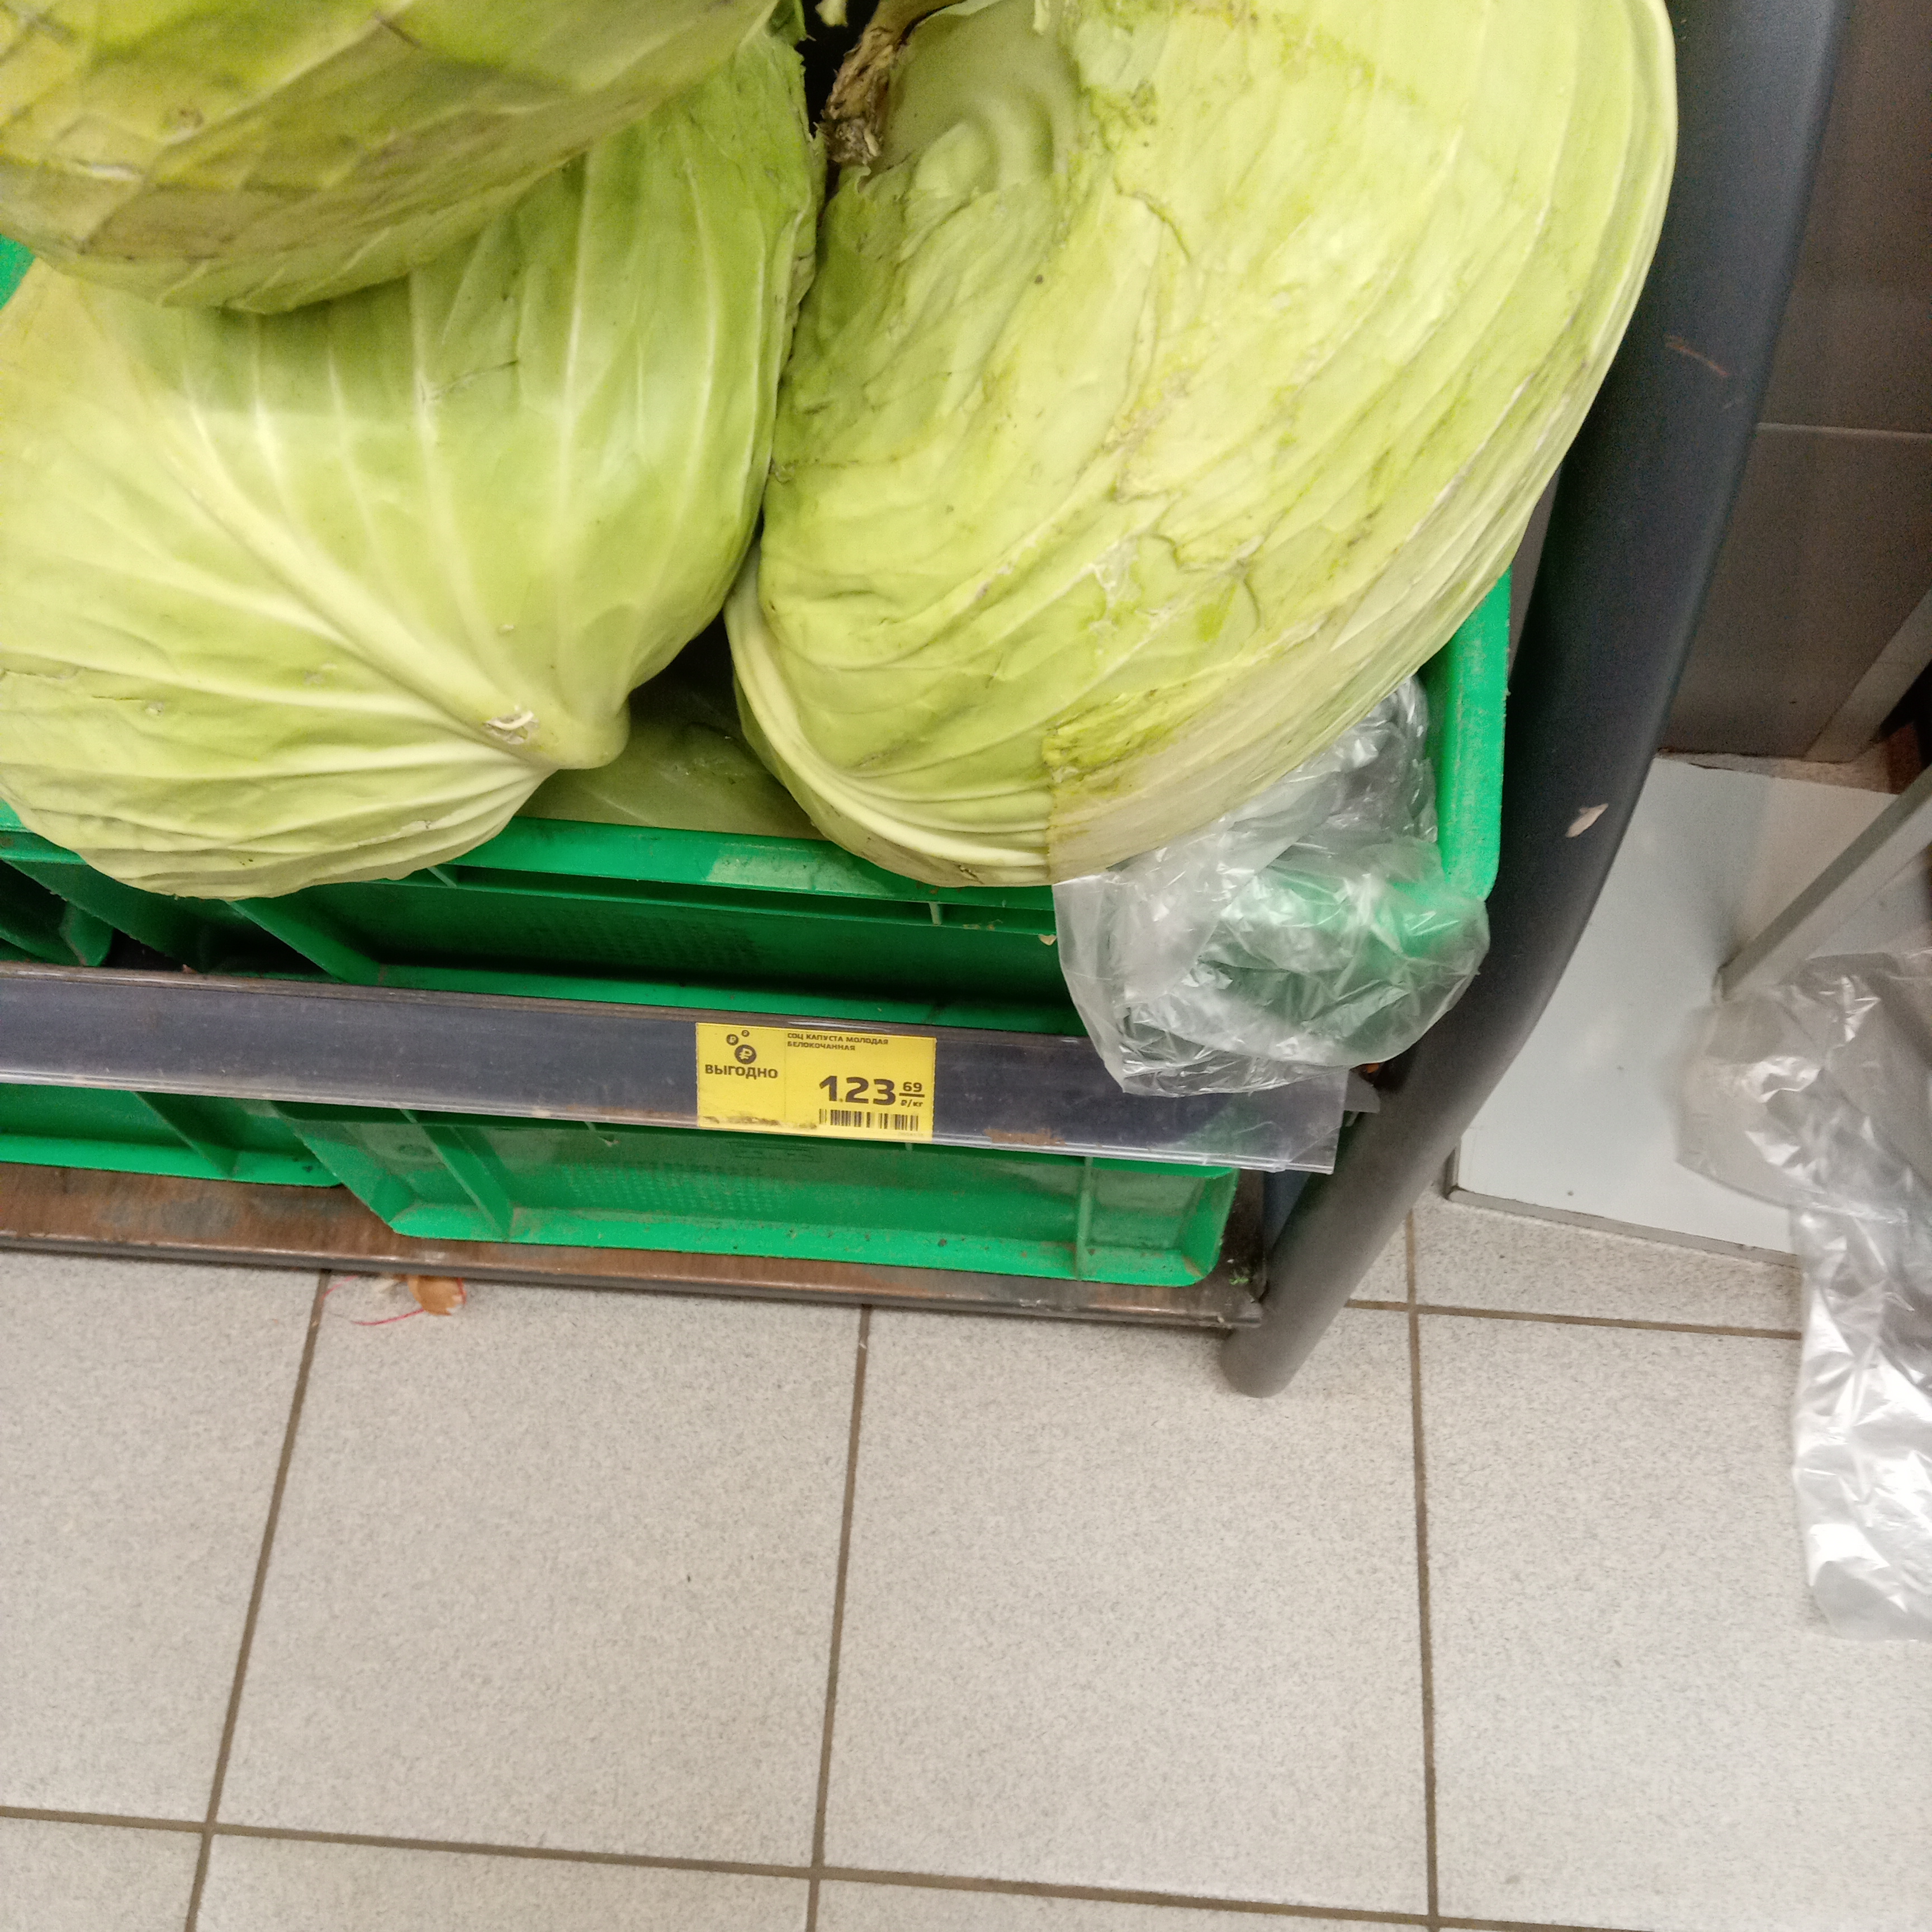 35 рублей килограмм. Продавец капусты на базаре. Рублей за килограмм. Женщина с ведром капусты на рынке.